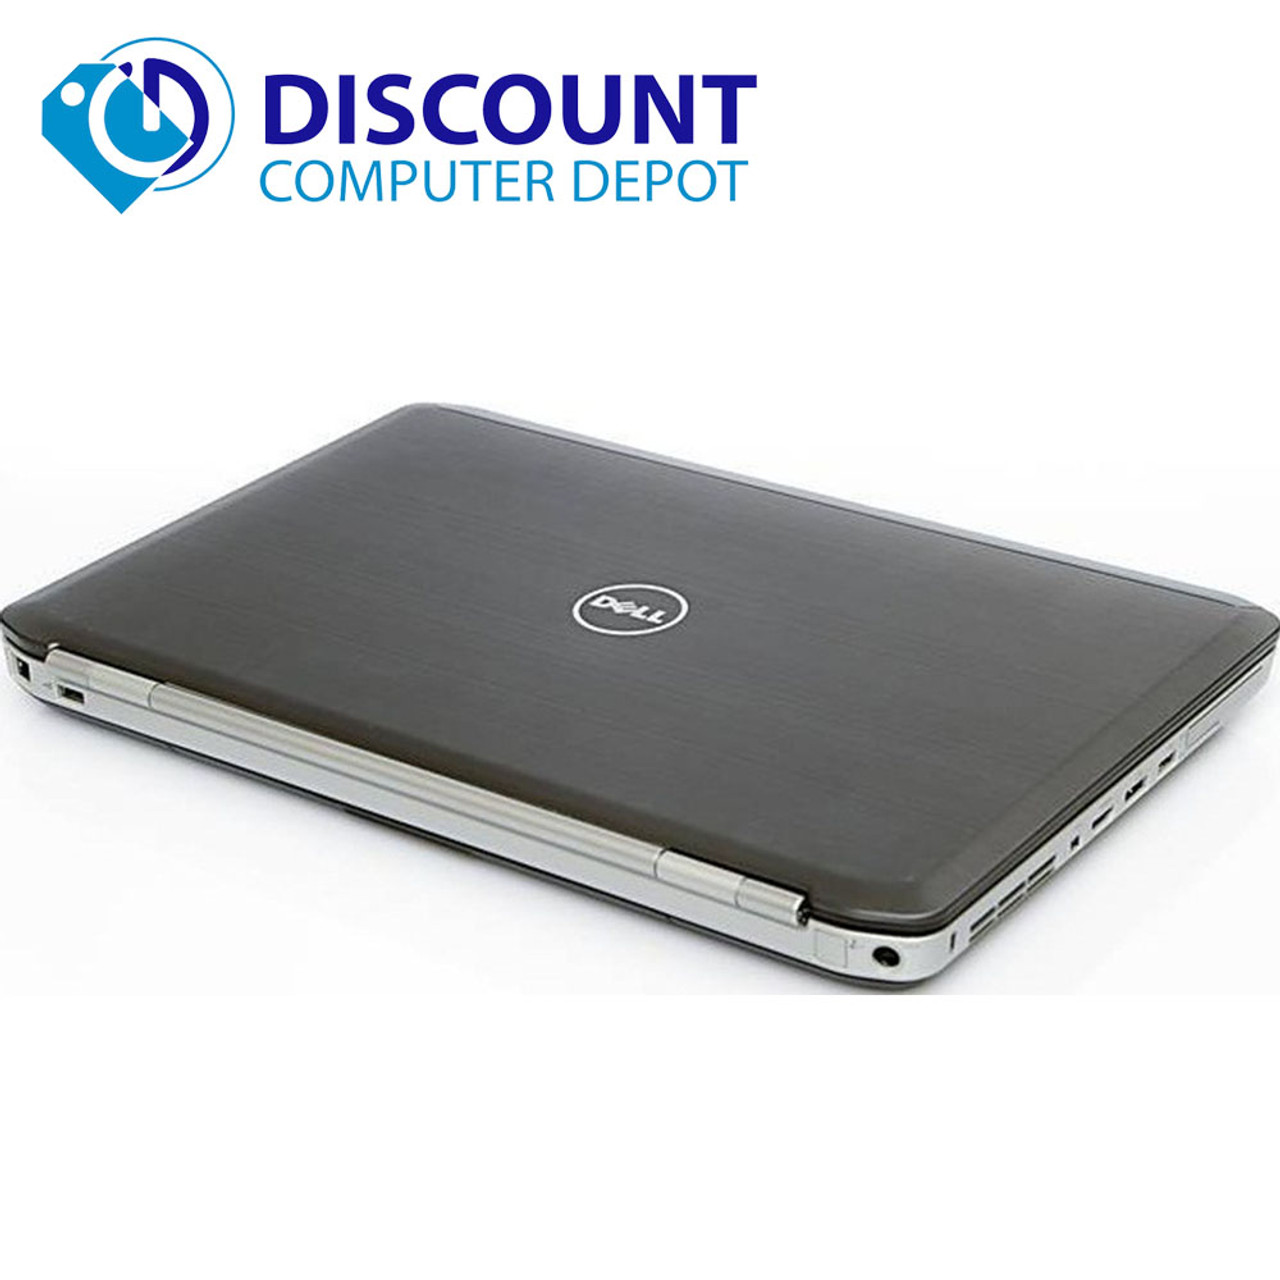 Dell Latitude E5520 Laptop I7-2620M 2.7GHz 4GB 120GB SSD HDMI